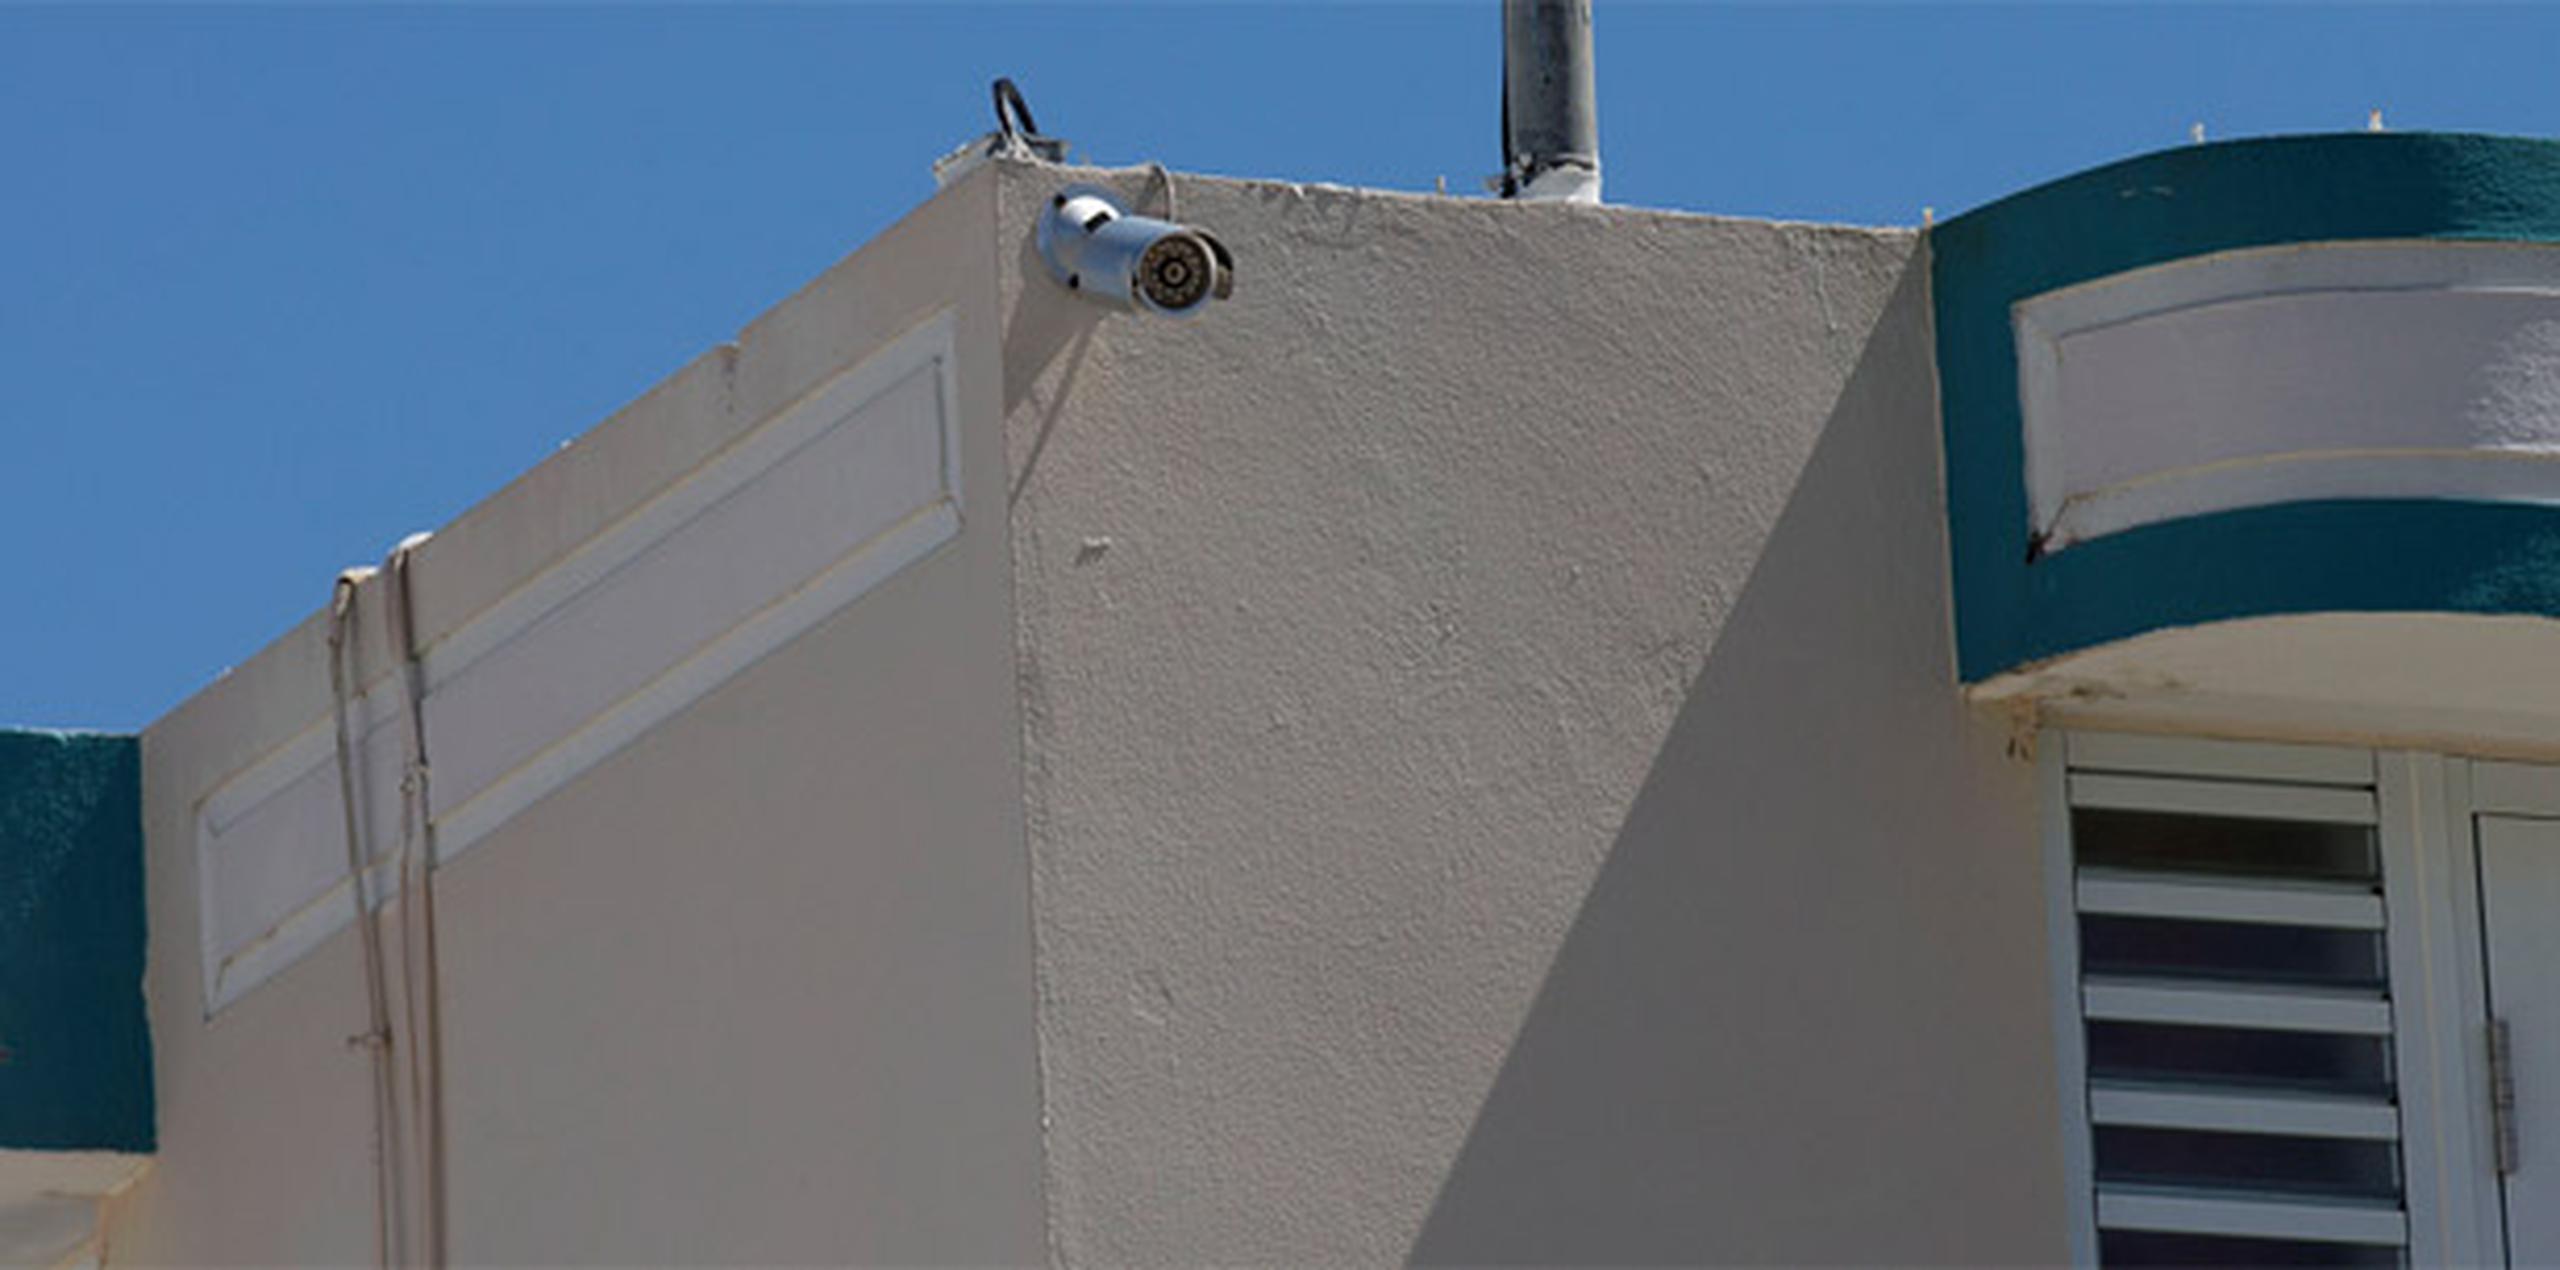 Las cámaras son otra buena opción para tratar de evitar robos poniendo una frente a la casa como método disuasivo, pero esa no debe ser lo única. (Archivo)